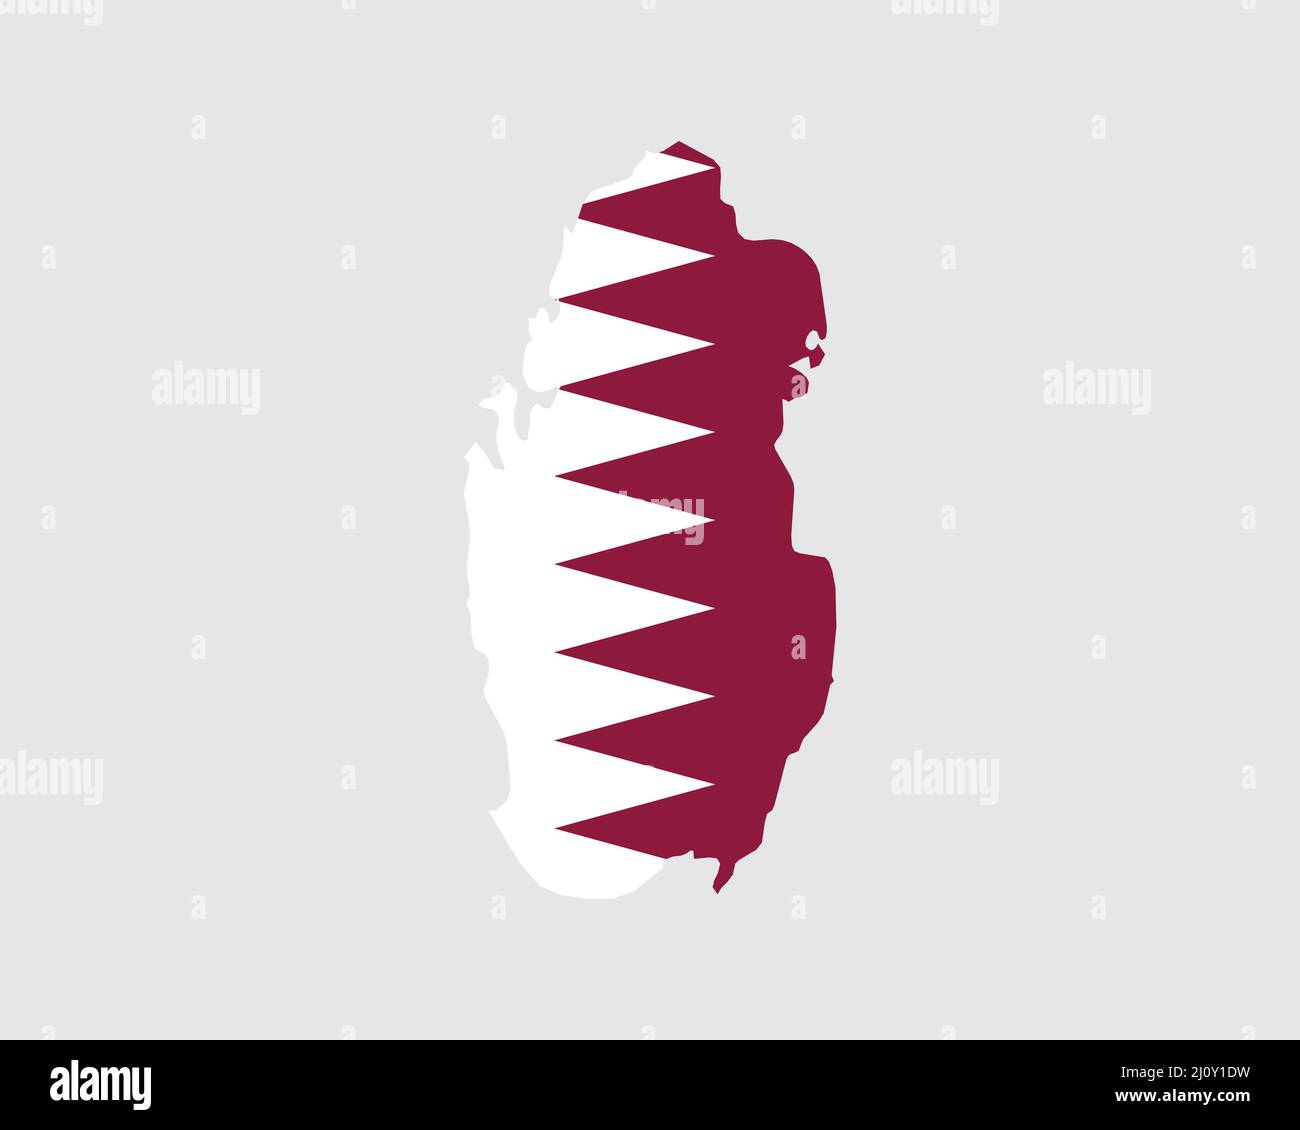 Karte Mit Der Flagge Von Katar. Karte des Staates Katar mit dem katarischen Länderbanner. Vektorgrafik. Stock Vektor